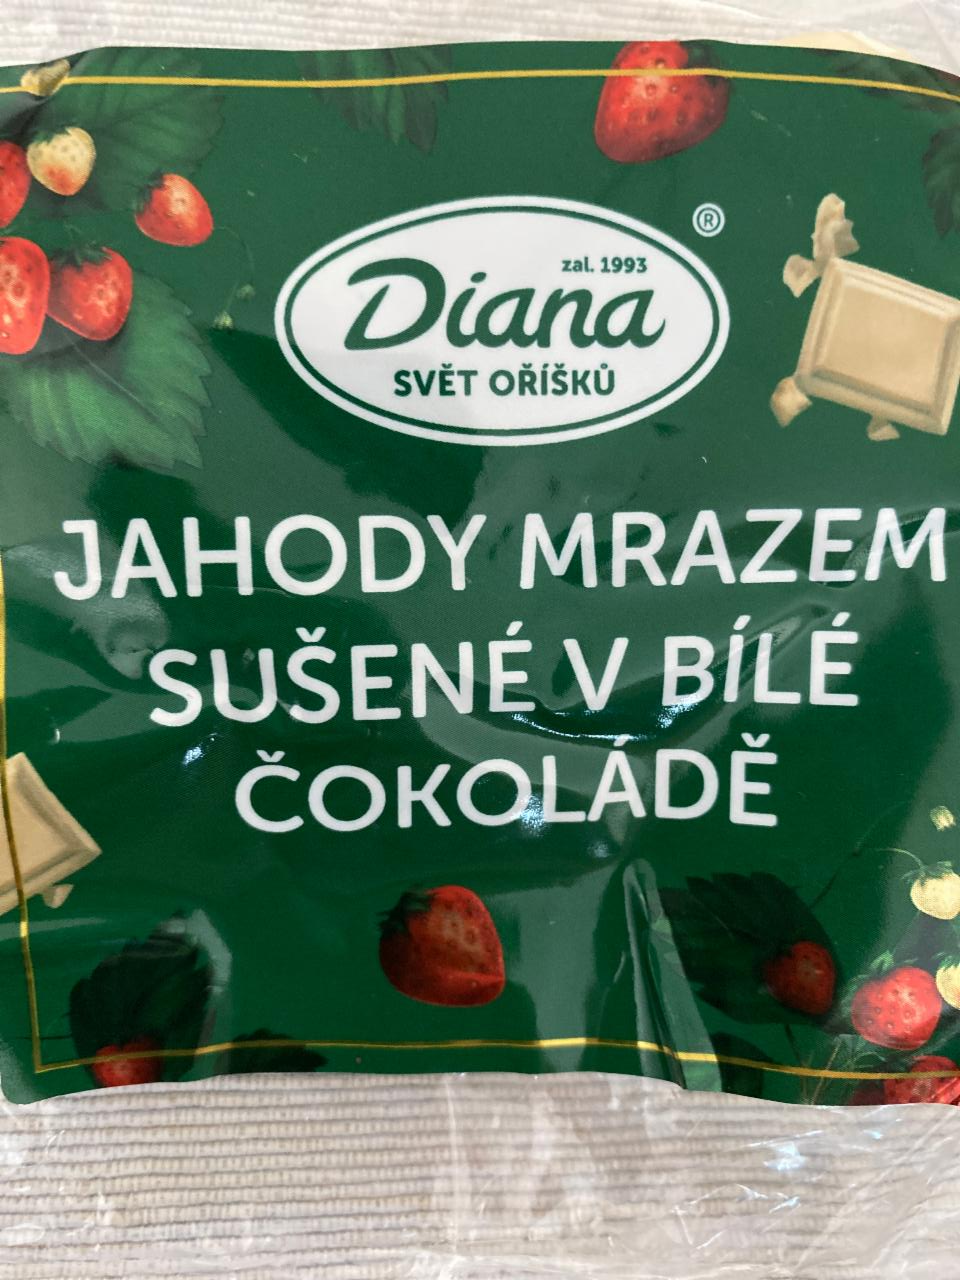 Fotografie - Jahody mrazem sušené v bílé čokoládě Diana Svět oříšků